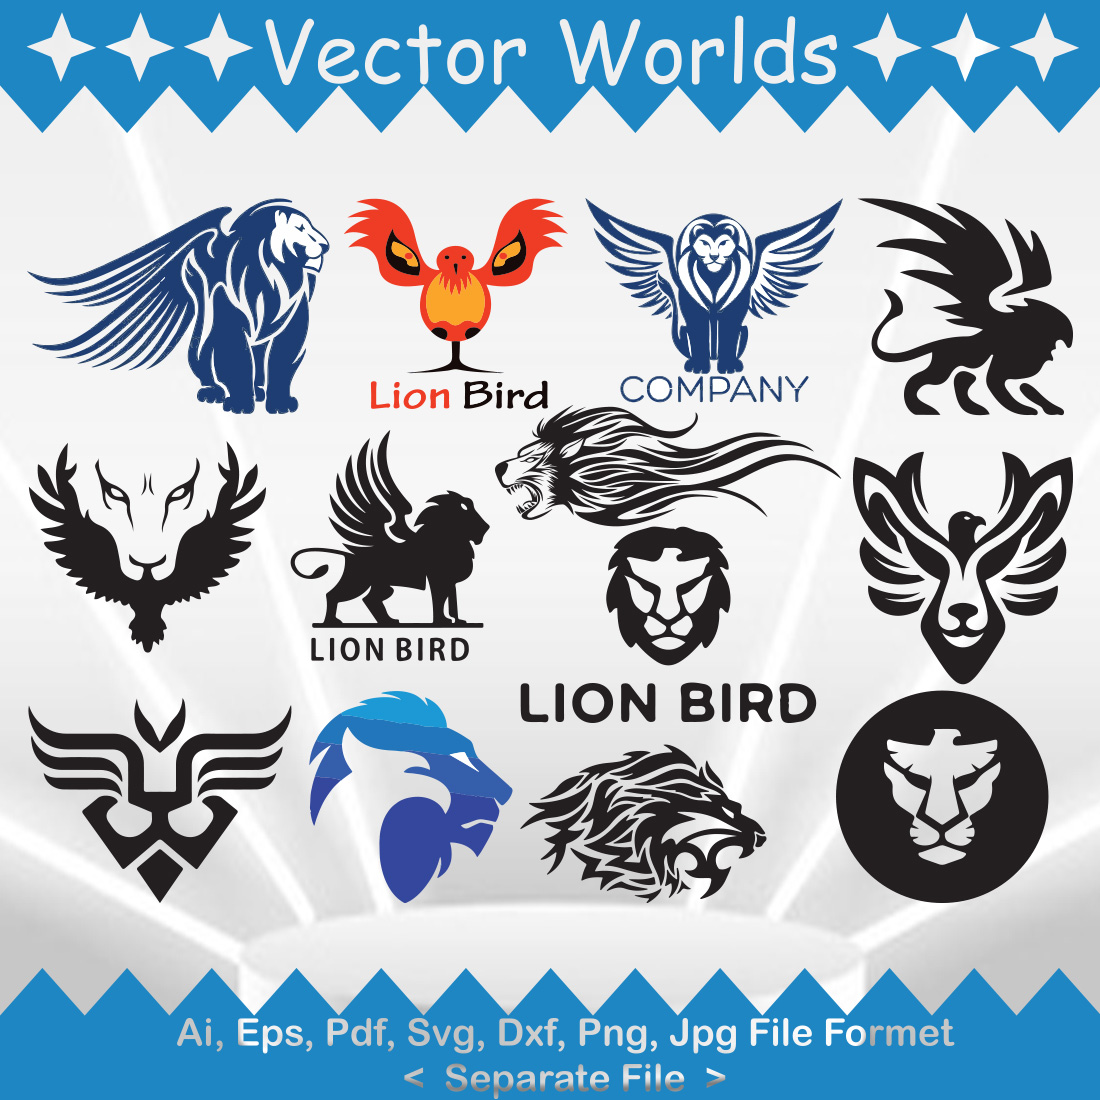 Lion Bird Logo SVG Vector Design cover image.